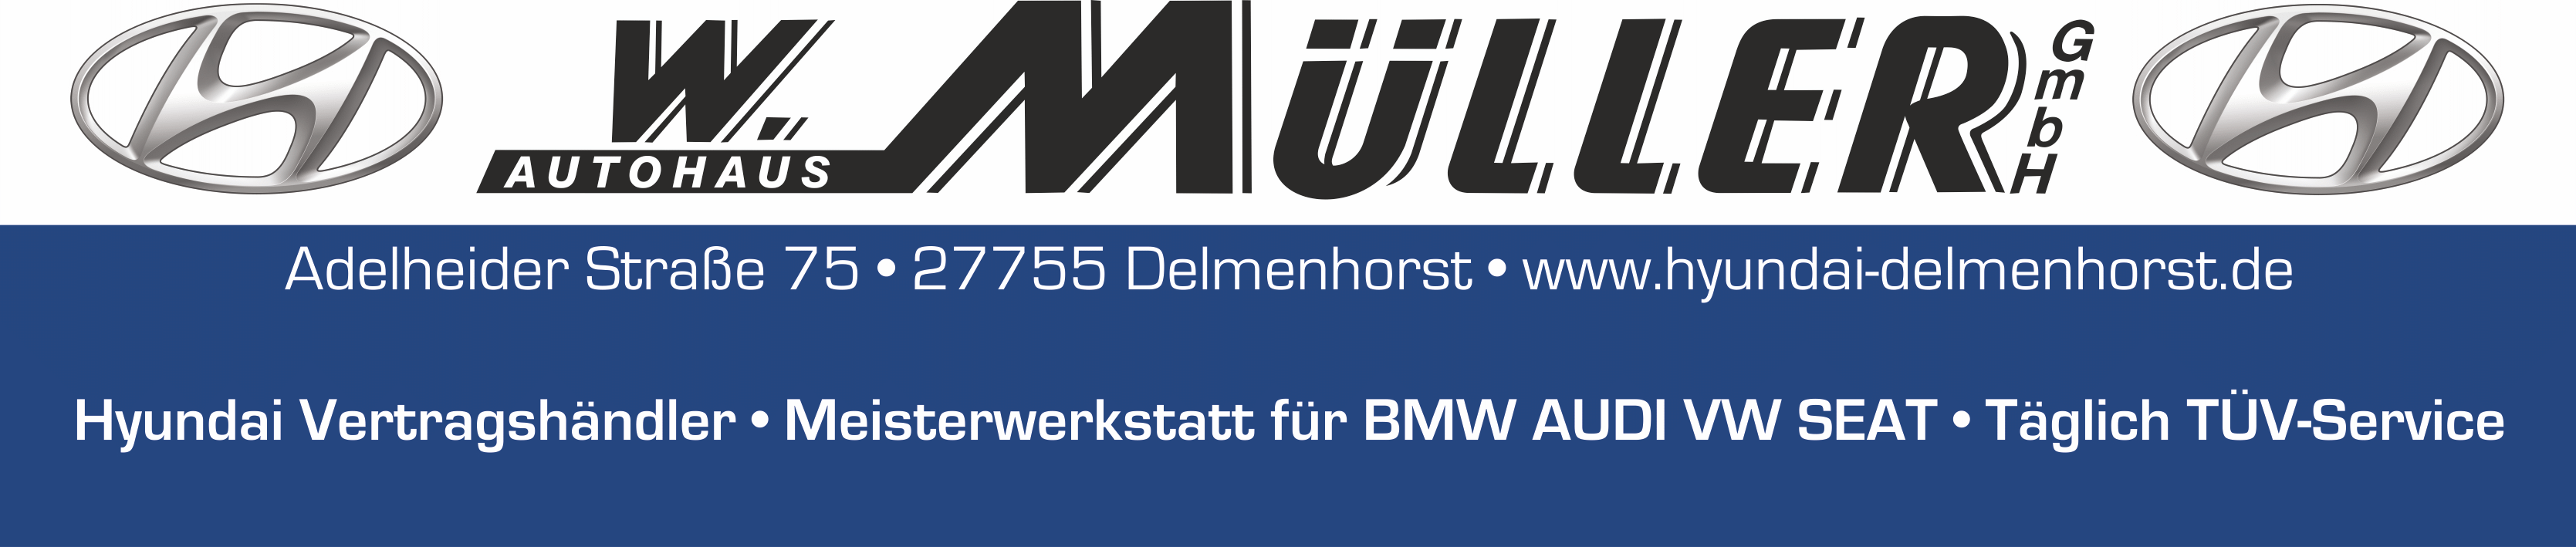 https://www.hsg-delmenhorst.de/wp-content/uploads/2022/01/Autohaus-W.-Mller2.png